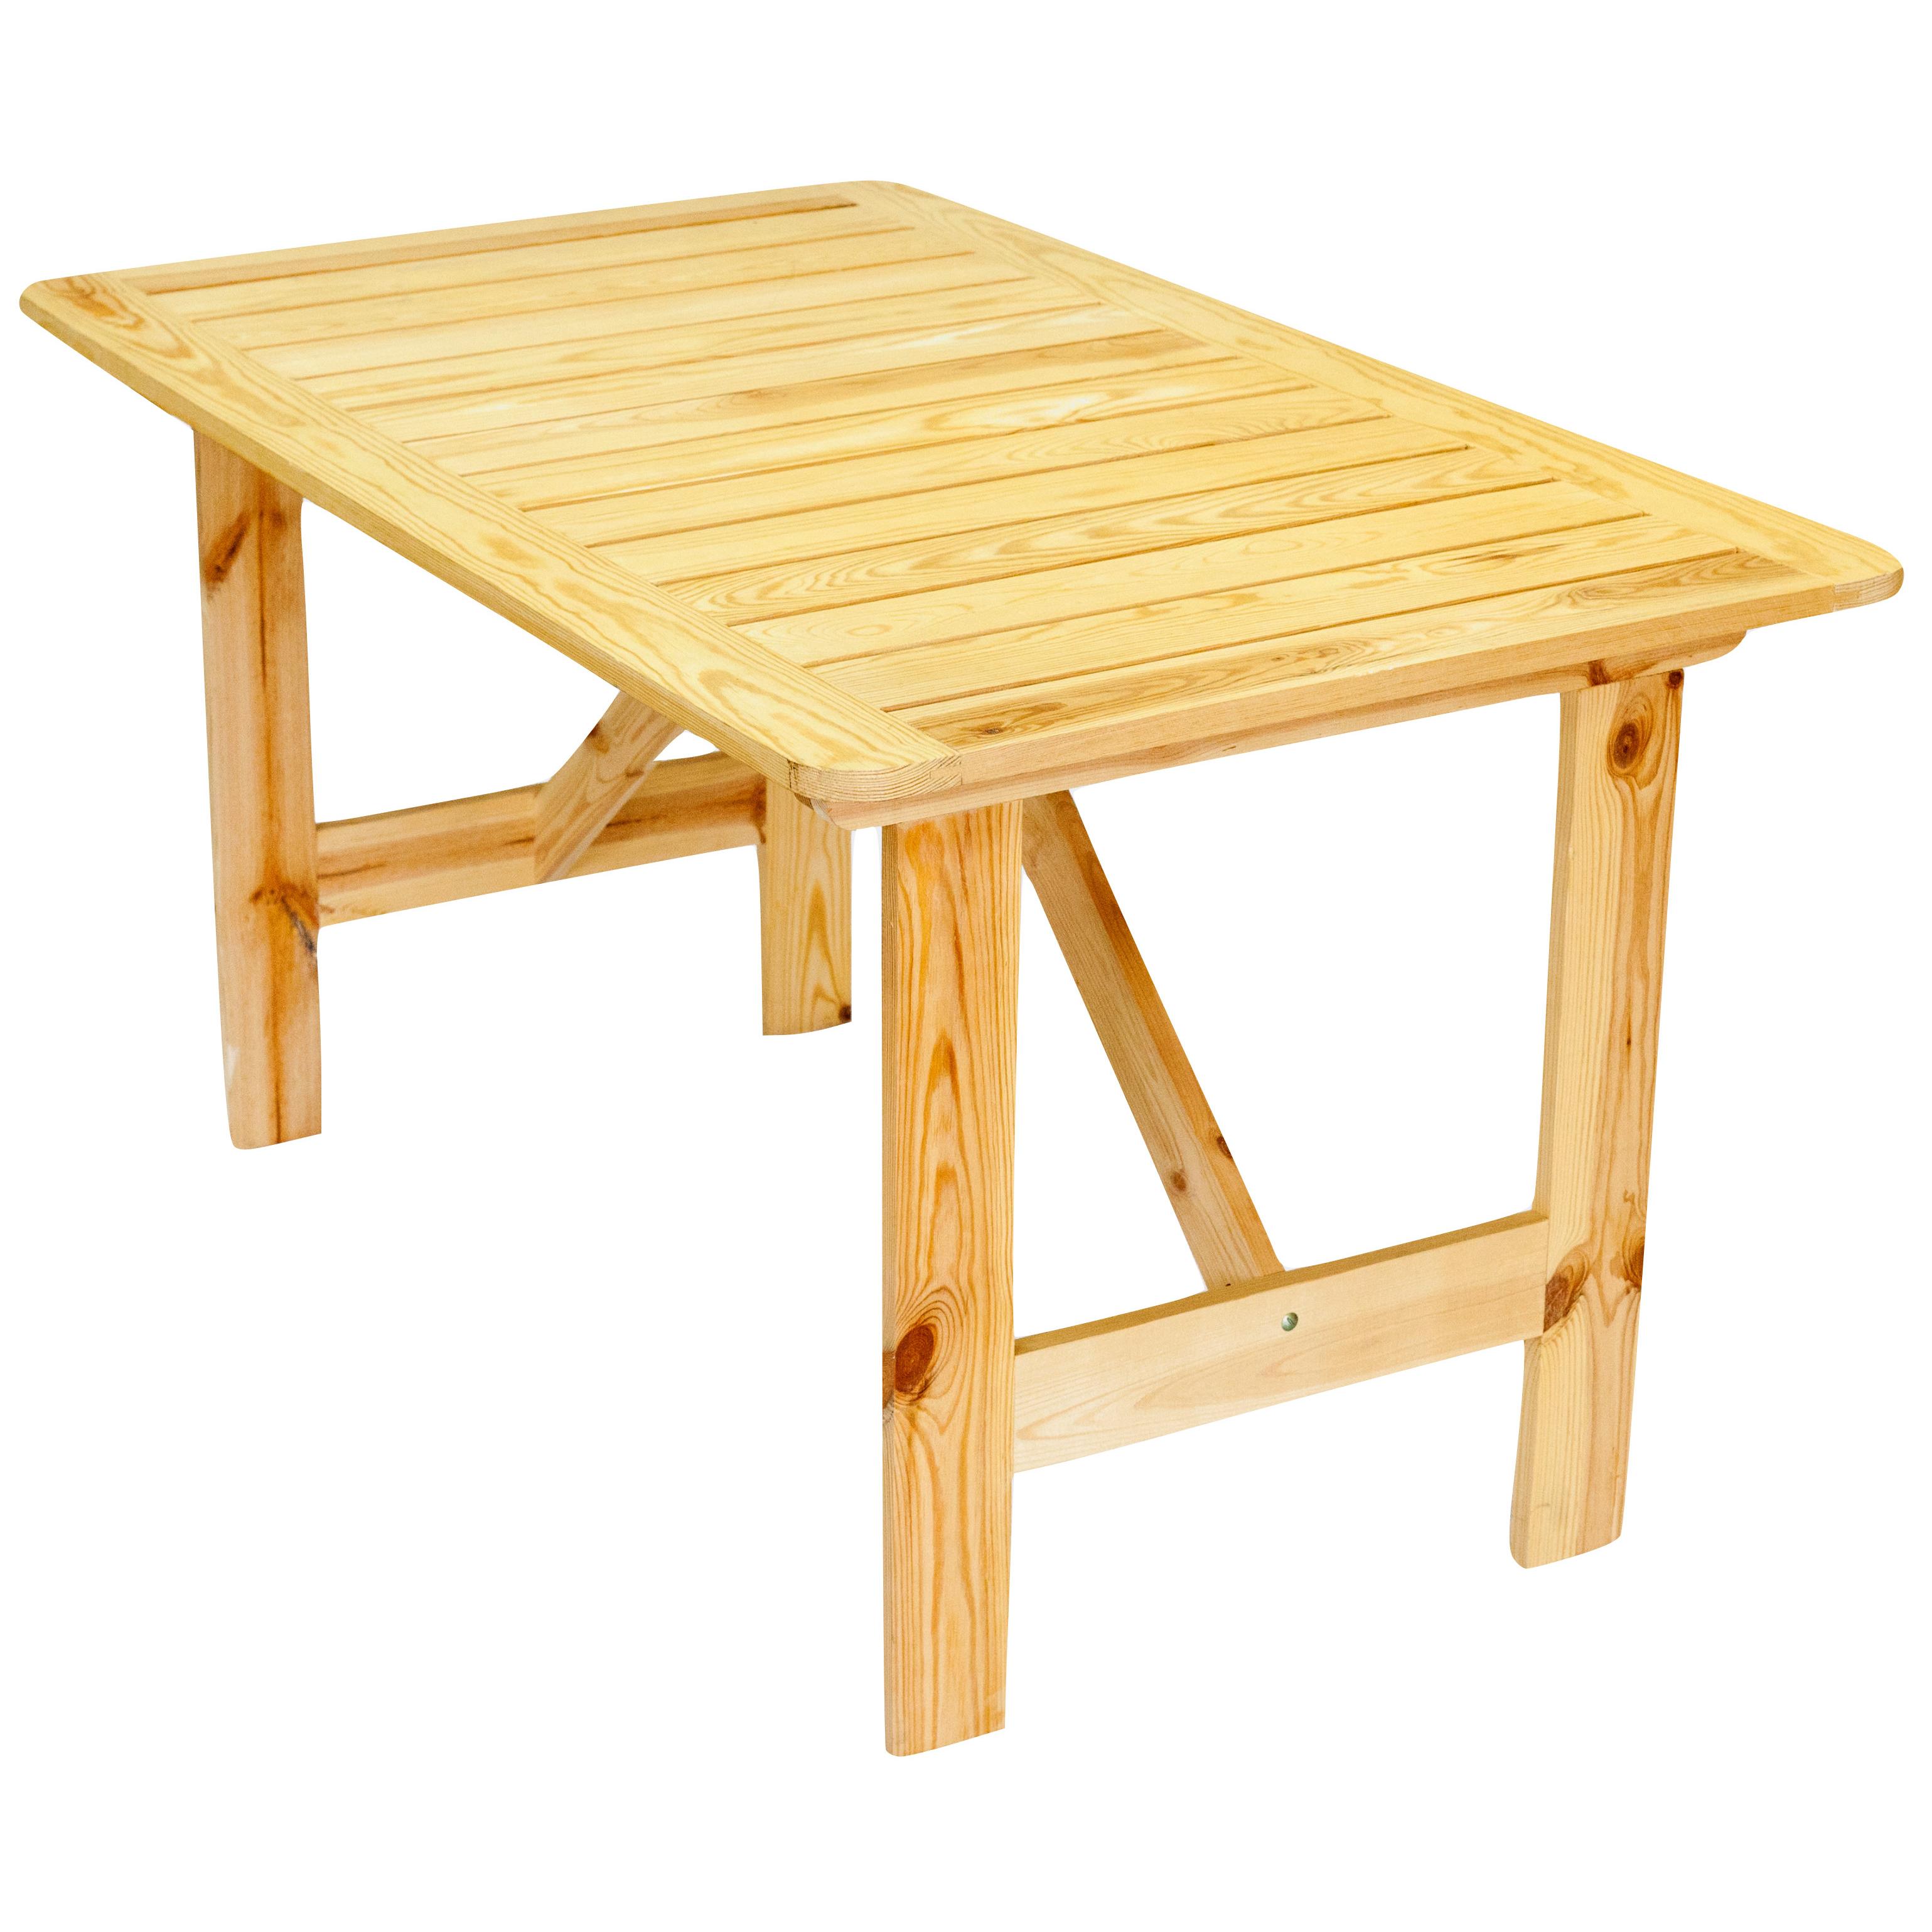 складной стол из дерева на дачу